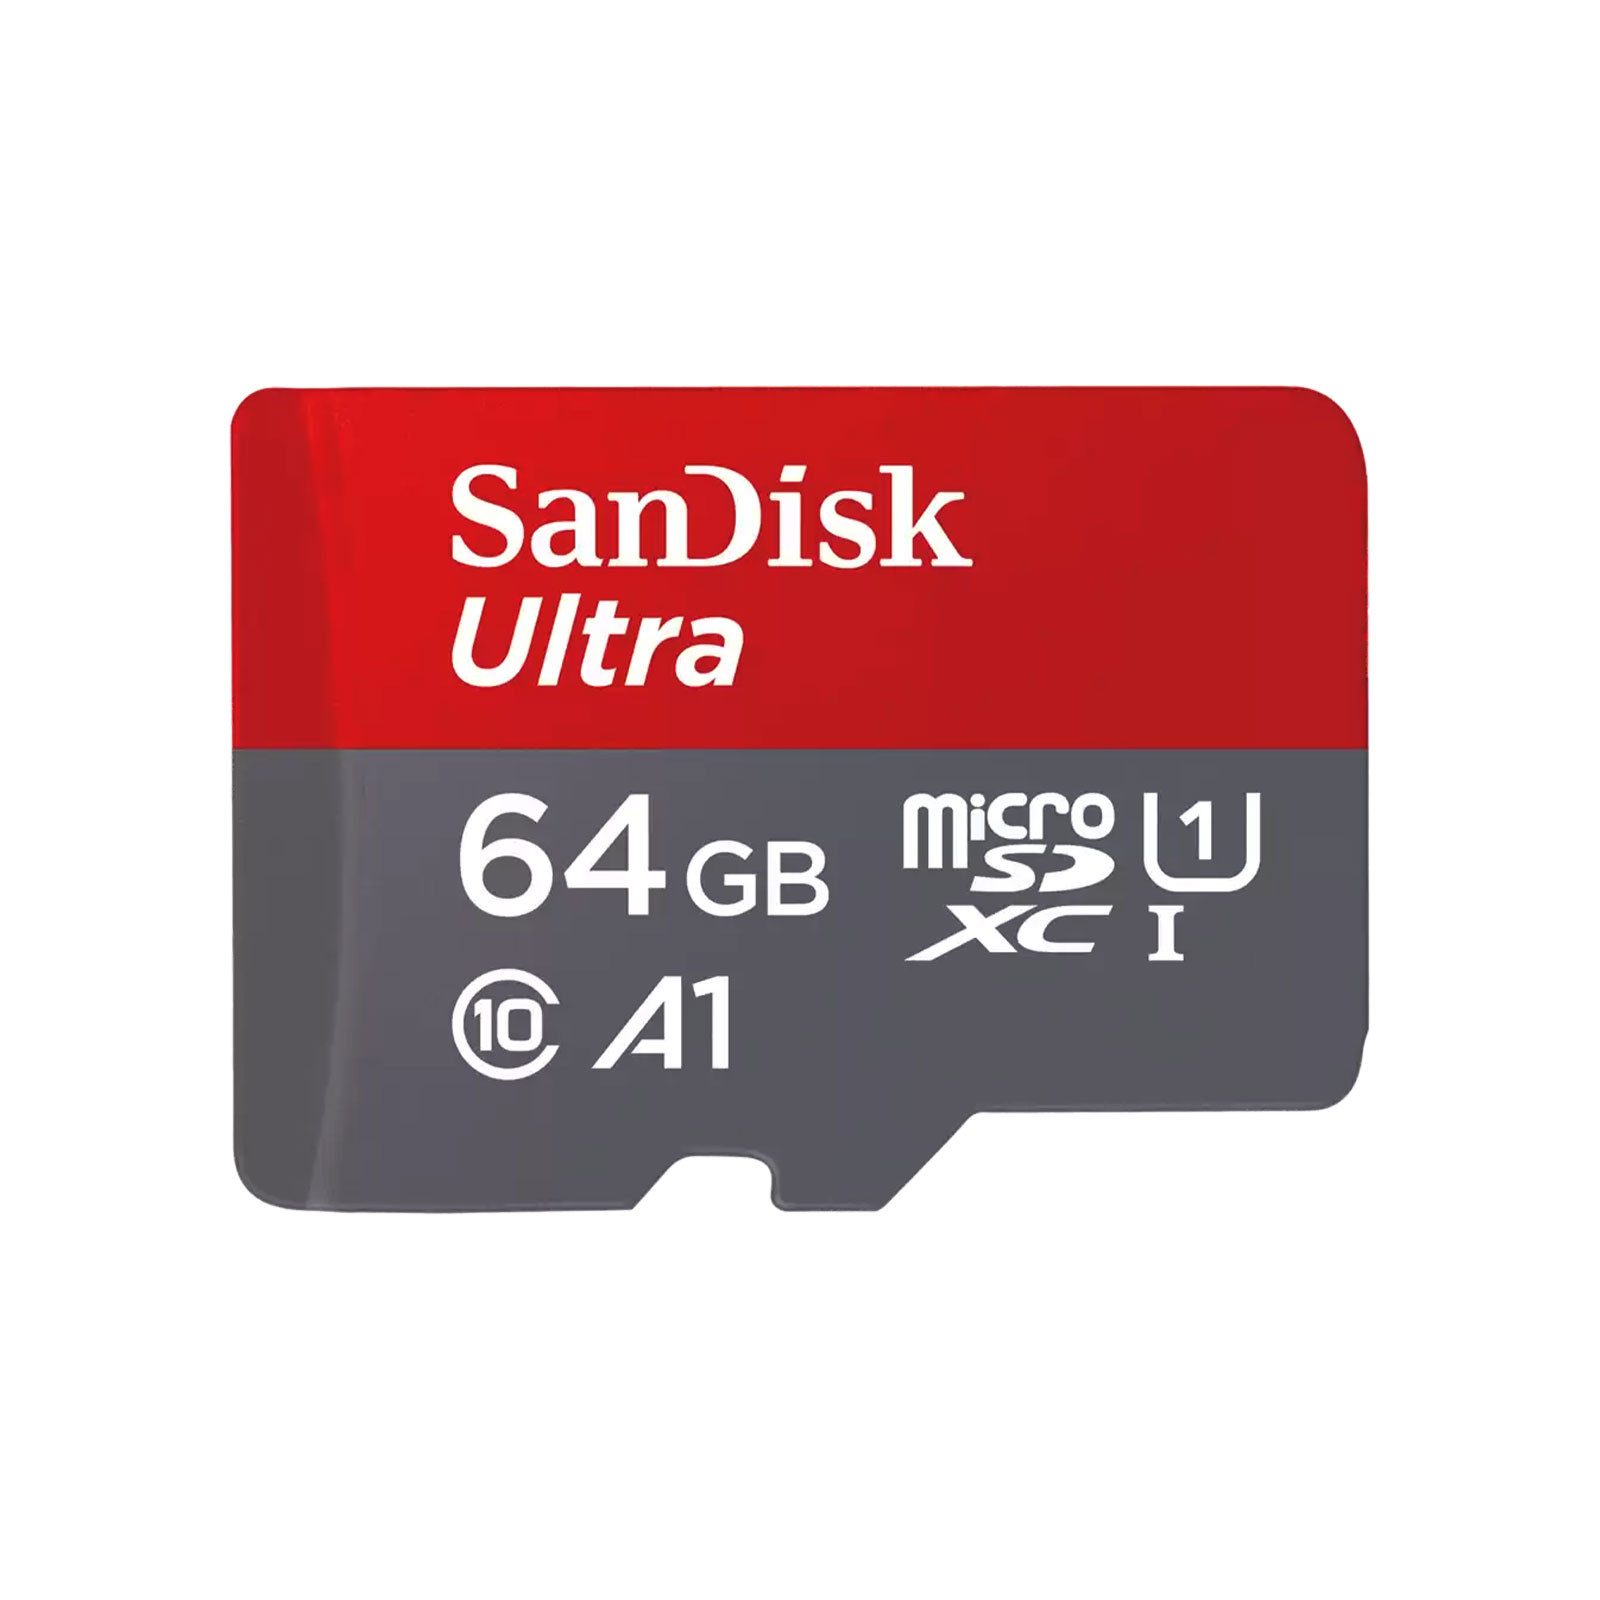 Sandisk Ultra microSDXC Speicherkarte